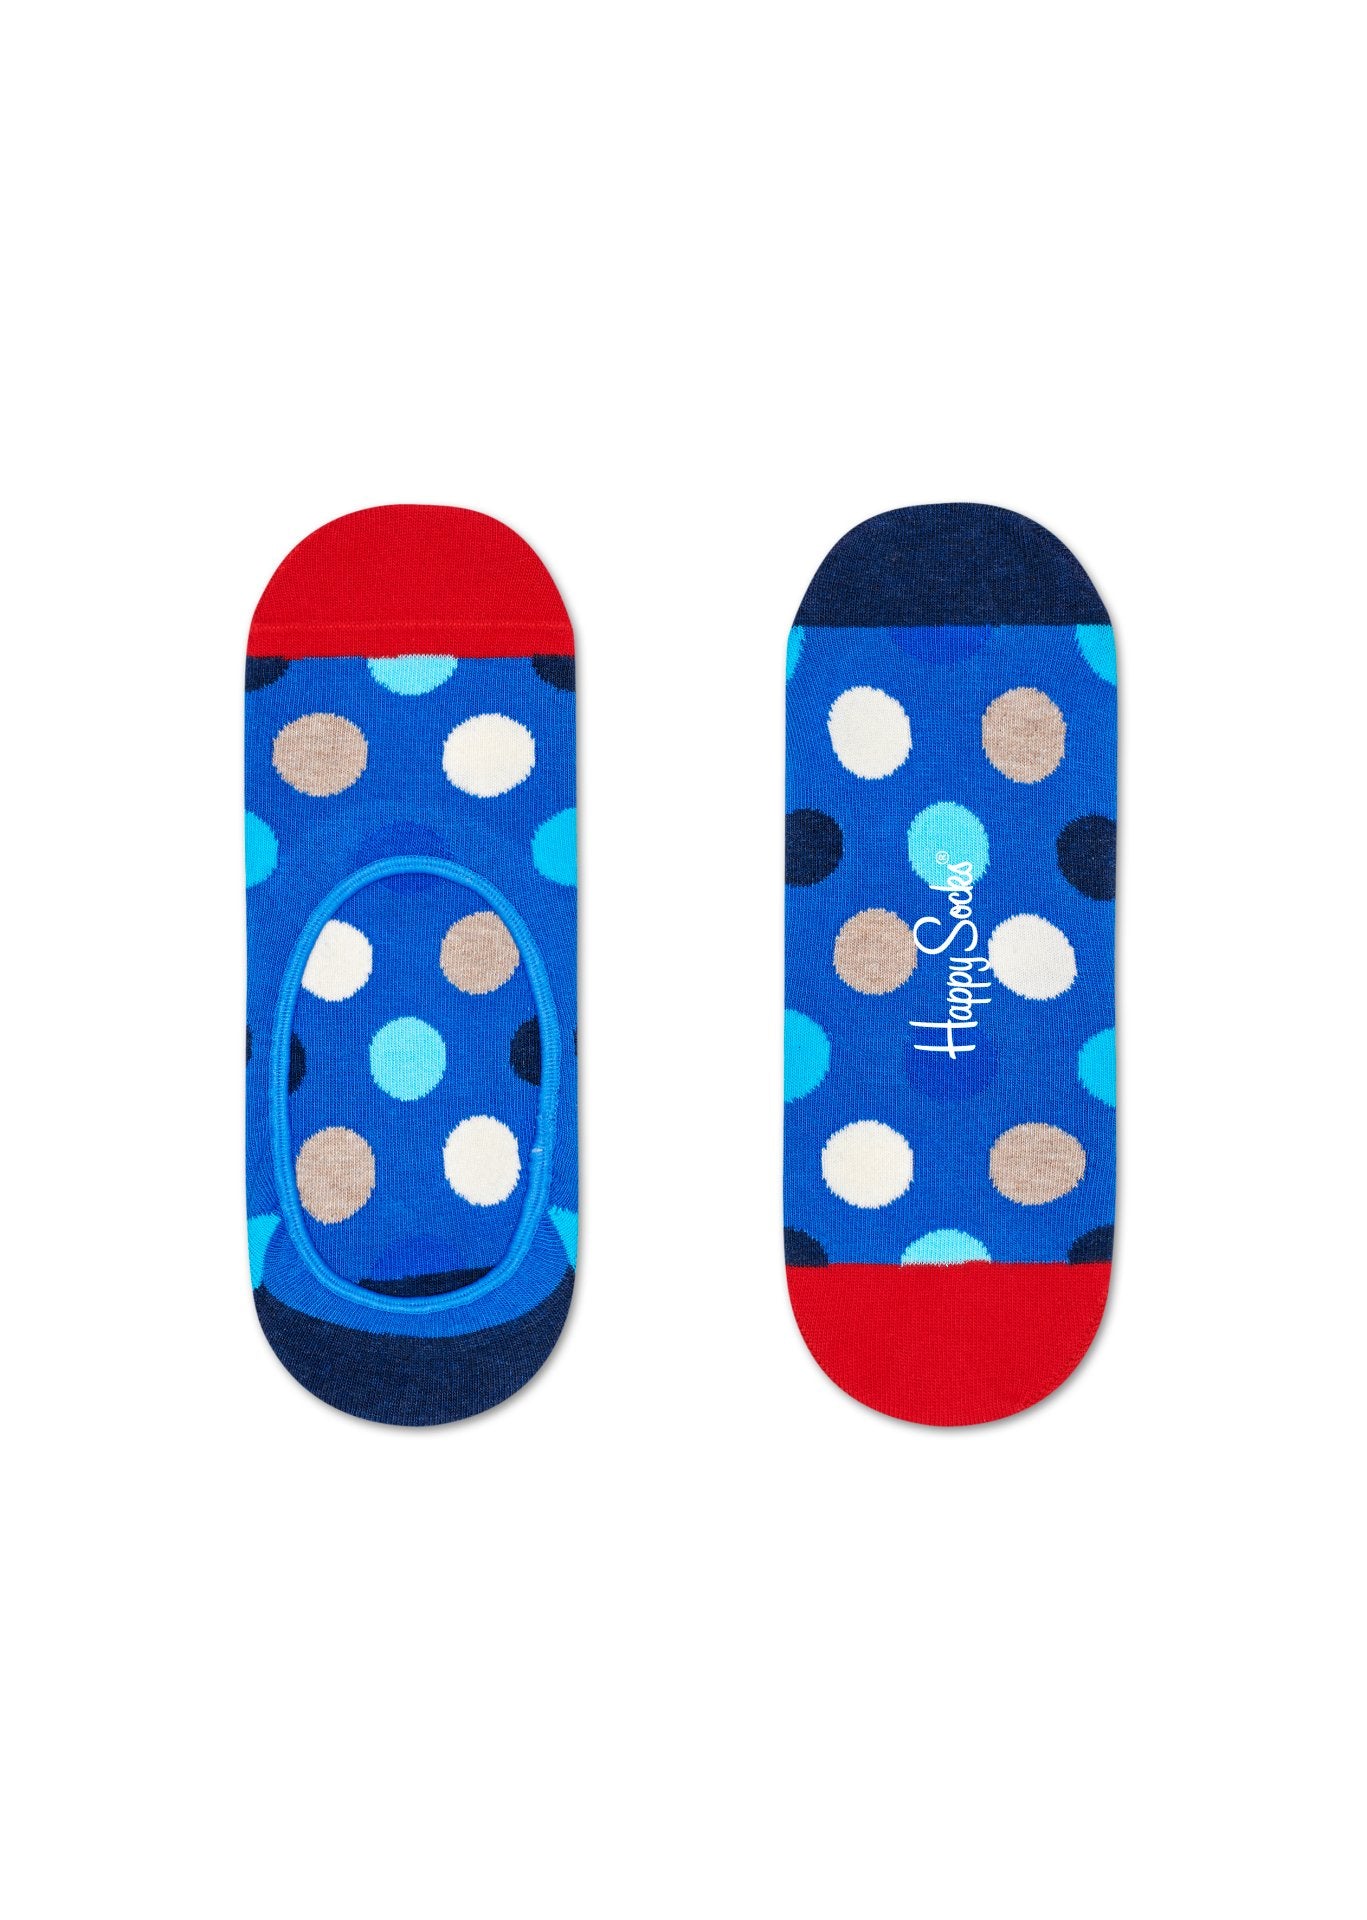 Nízké modré ponožky Happy Socks s puntíky, vzor Big Dot